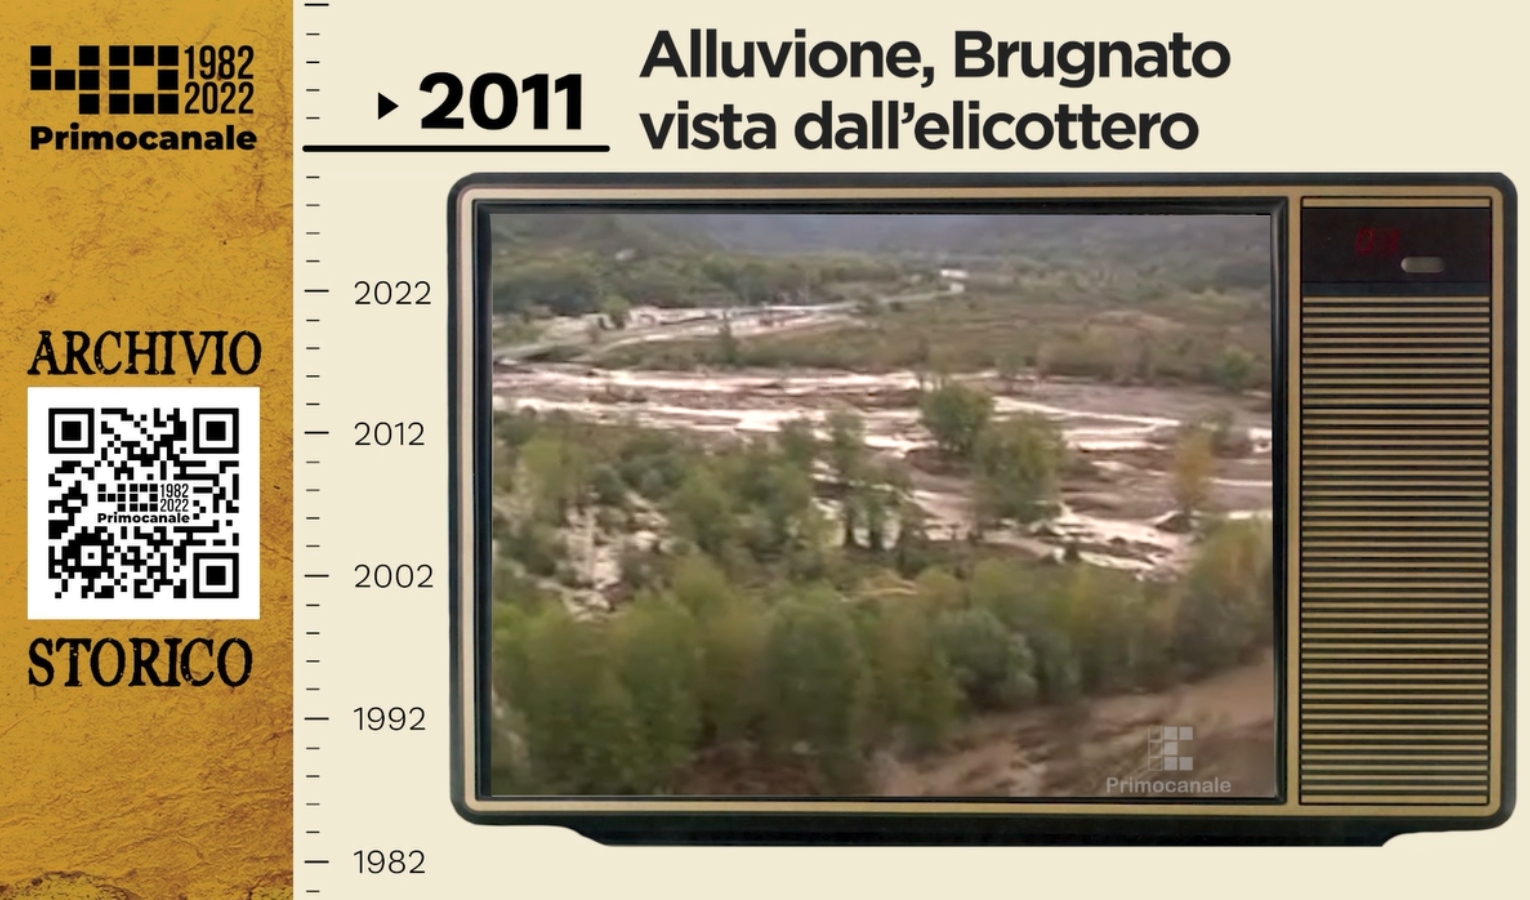 Dall'archivio storico di Primocanale, 2011: alluvione, Brugnato vista dall'elicottero